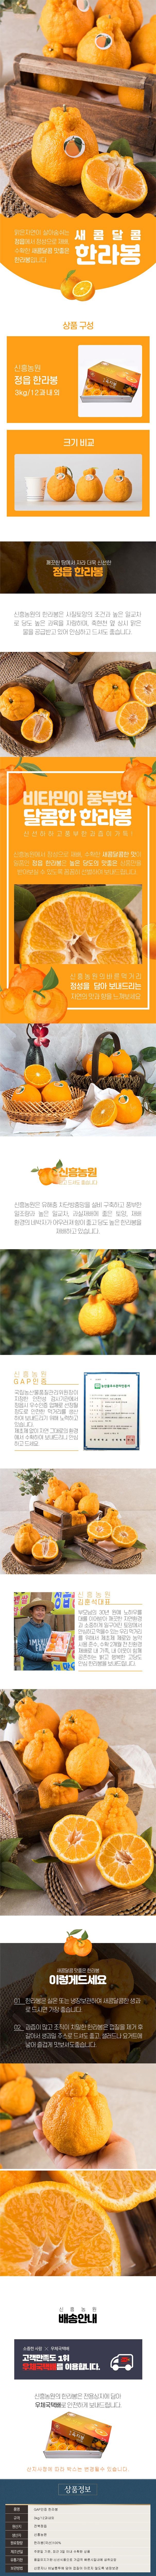 jeonguibhanrabong_page_3kg12.jpg